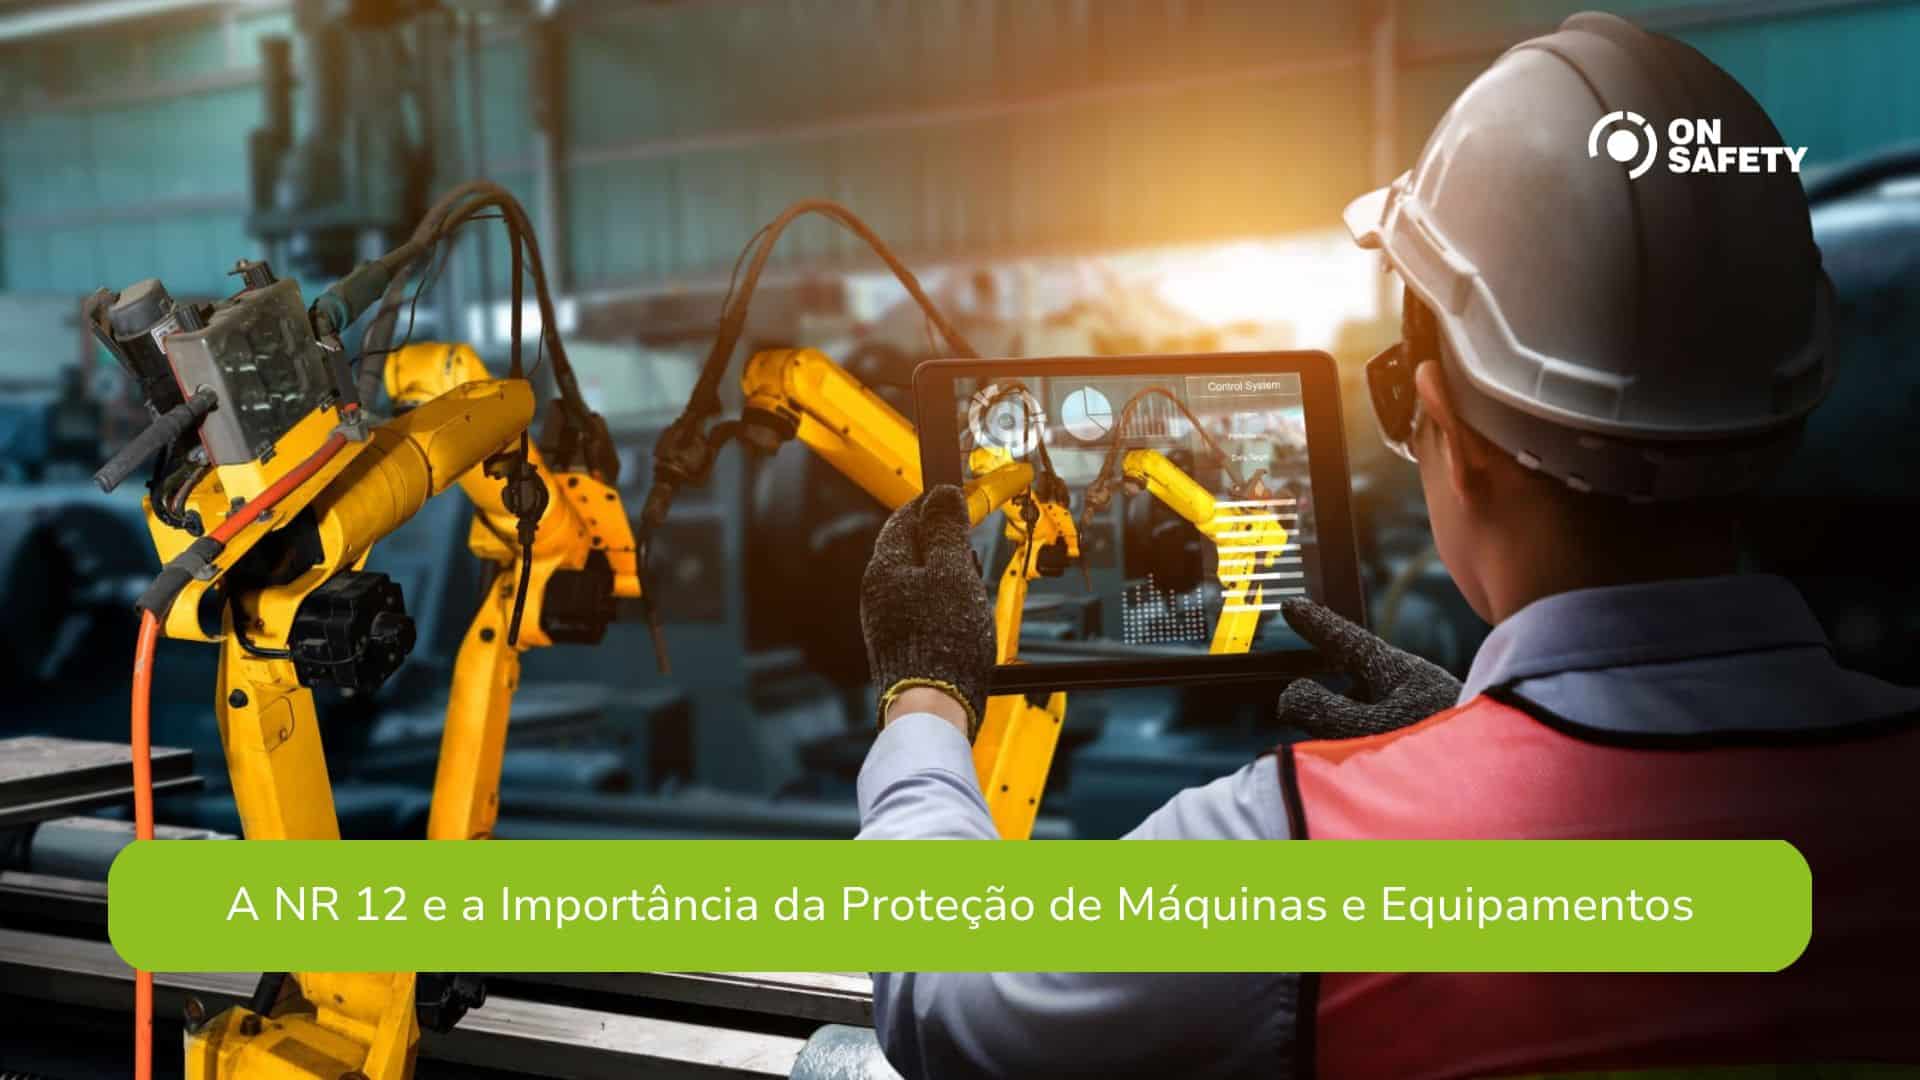 A NR 12 e a Importância da Proteção de Máquinas e Equipamentos